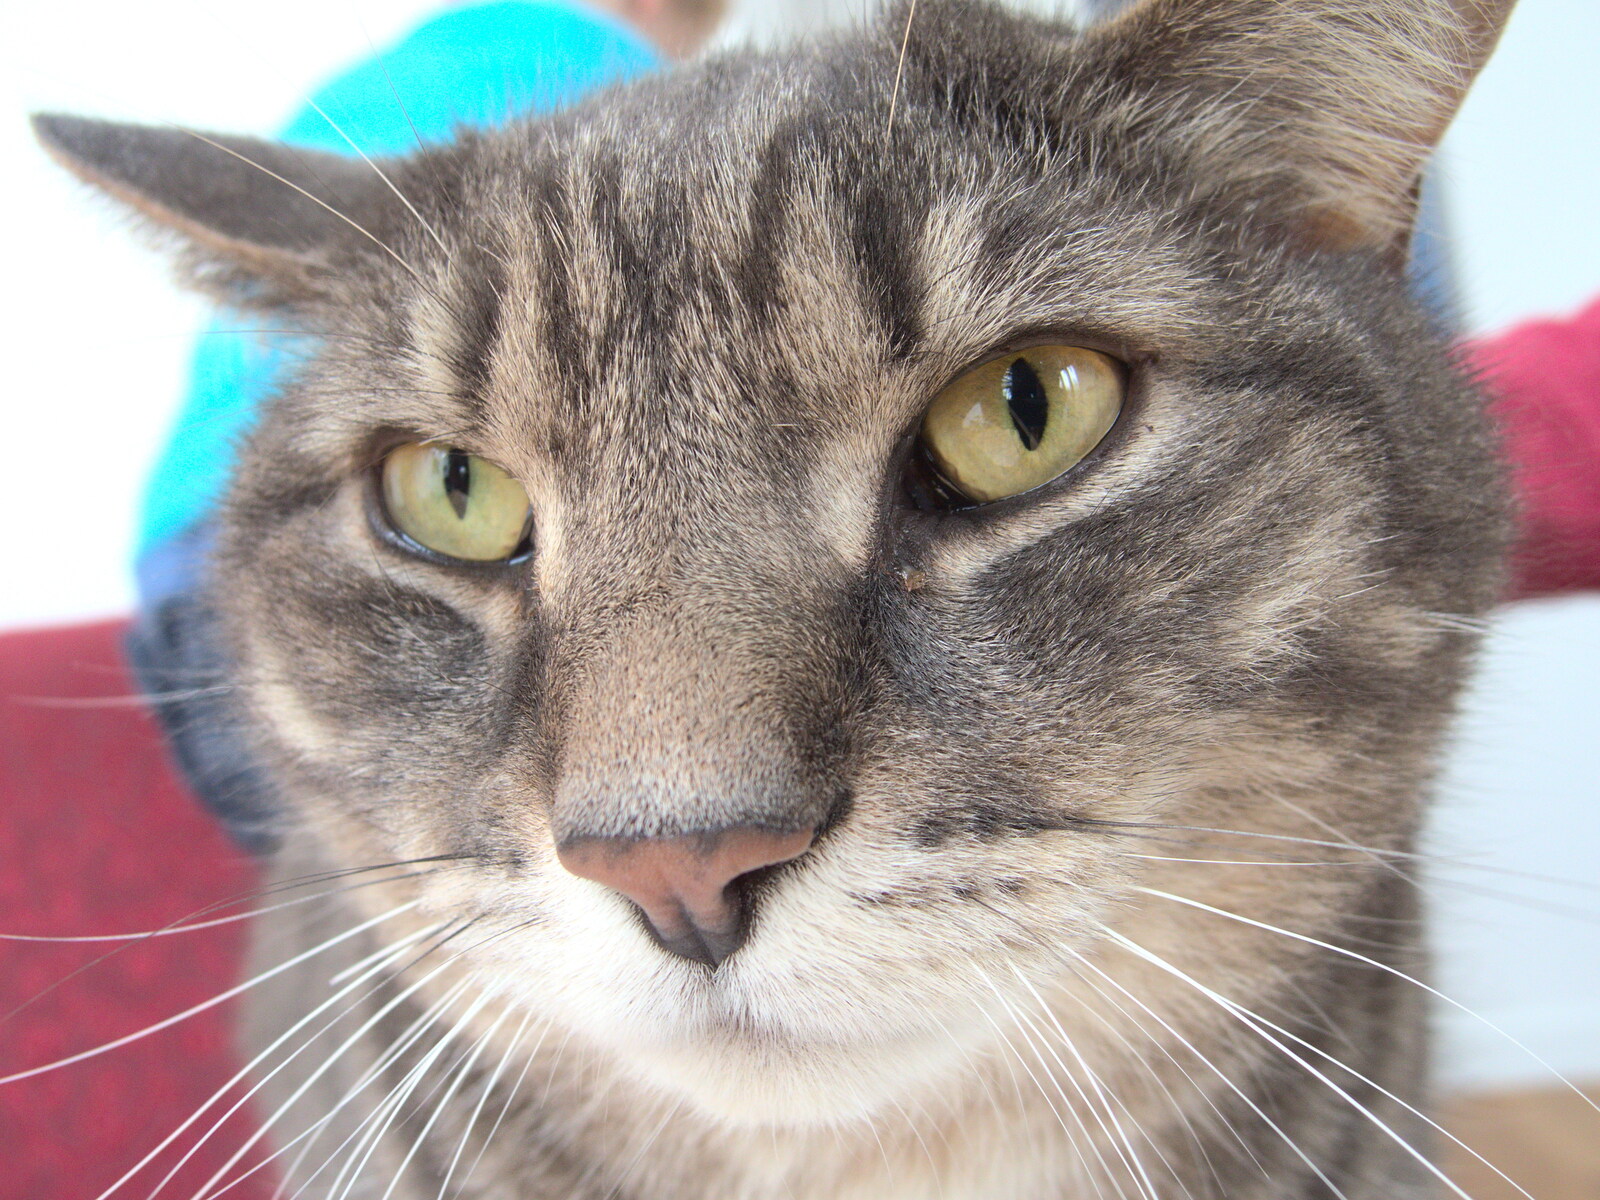 Boris - stripey cat - close up from Making Dens: Rosie's Birthday, Thornham, Suffolk - 25th April 2015